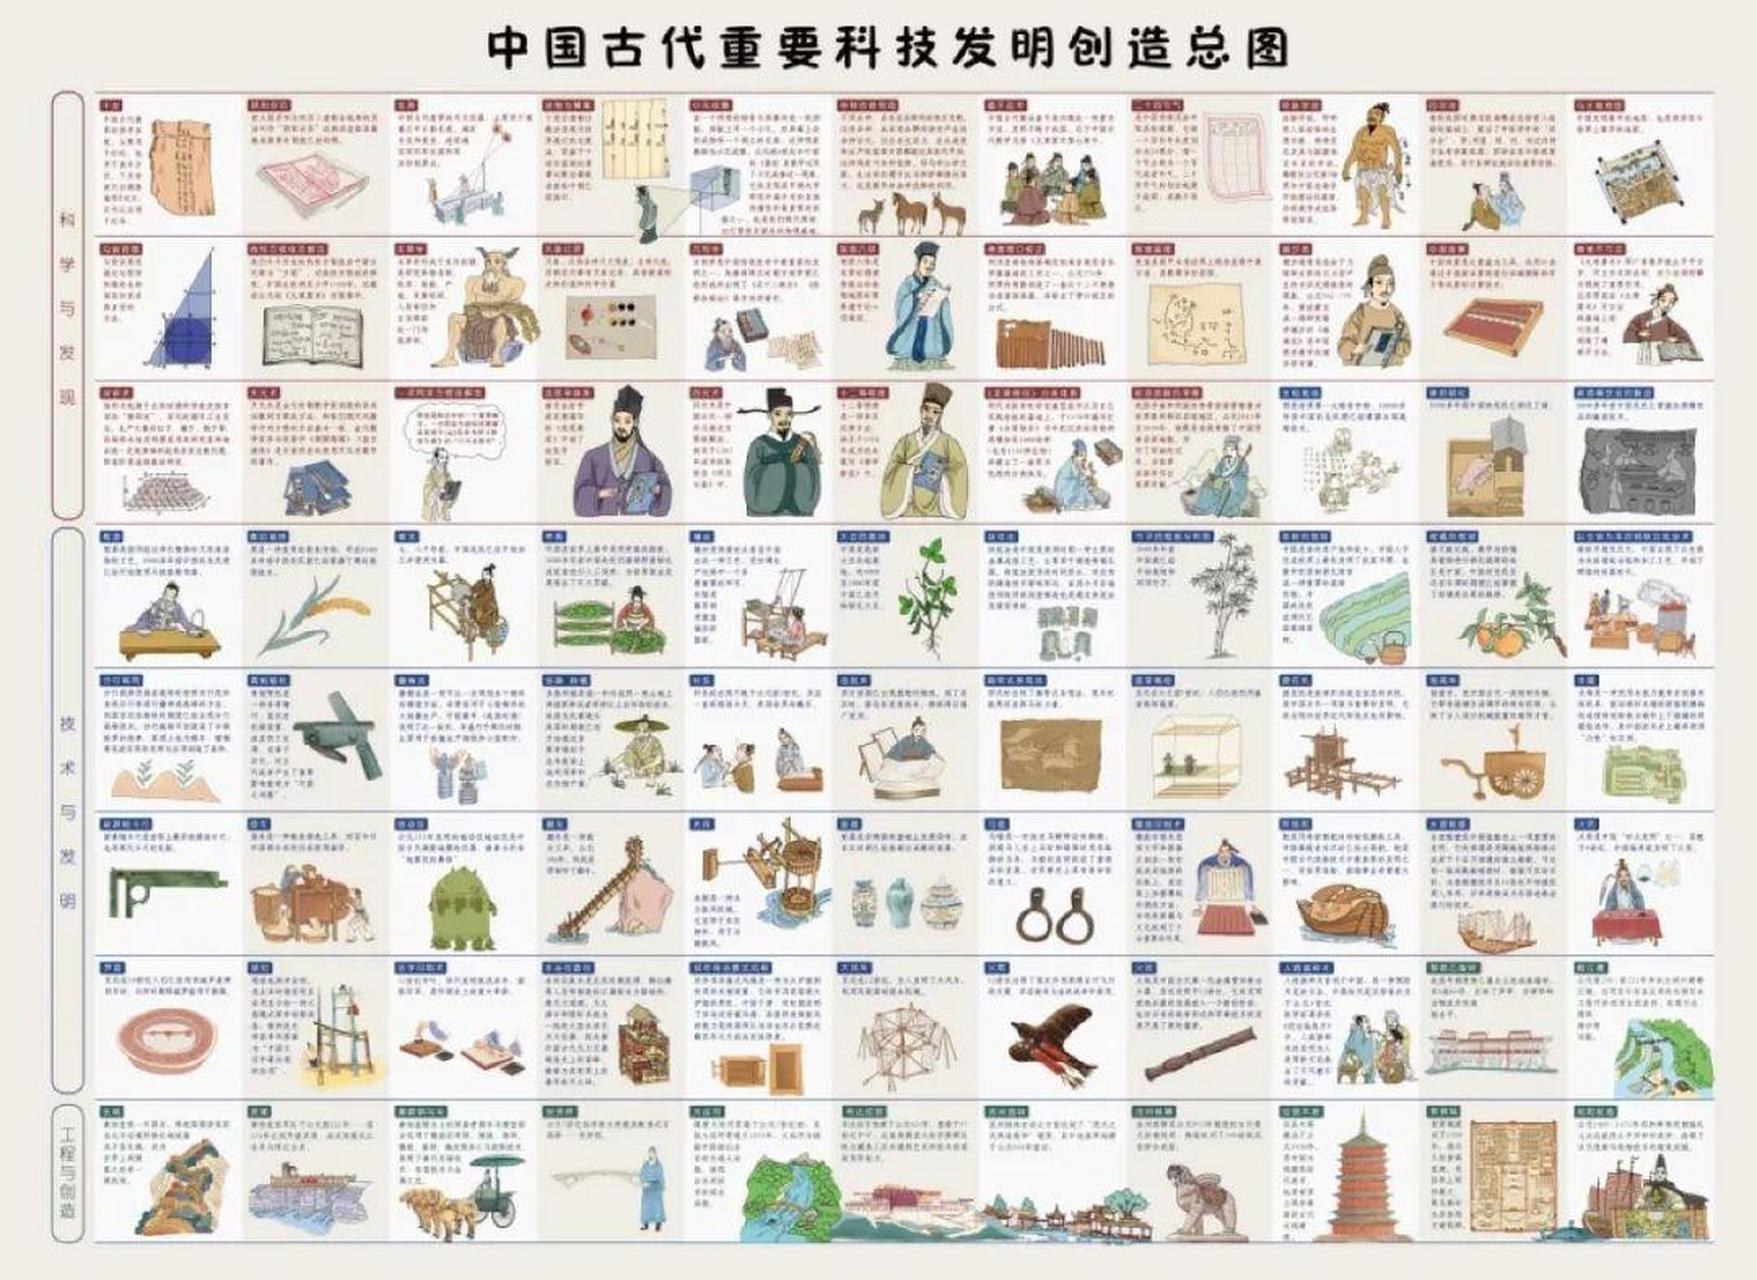 中国古代的发明创造远不止四大发明,还有许多对后世产生重要影响的